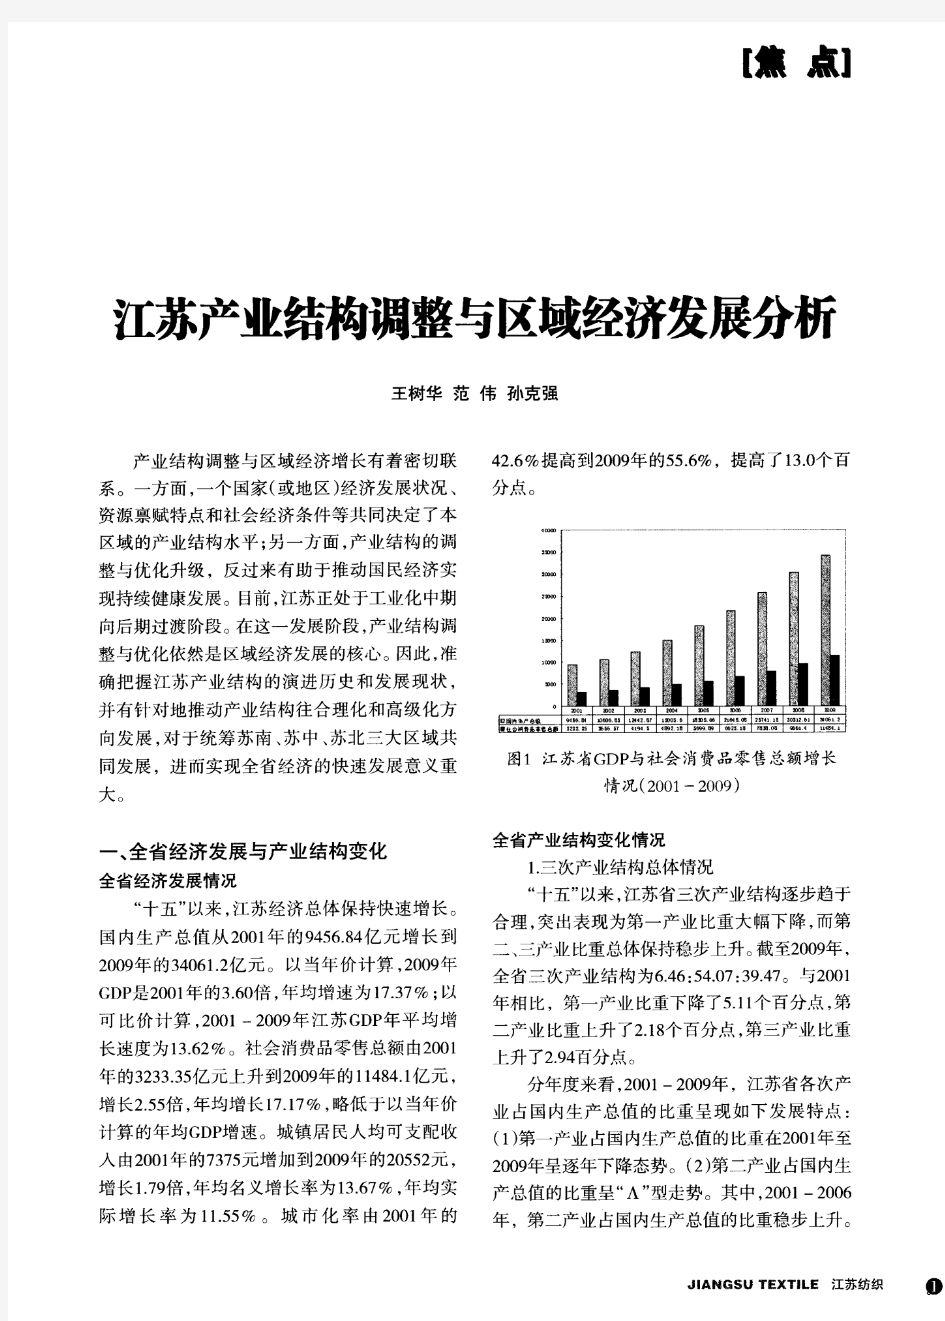 江苏产业结构调整与区域经济发展分析